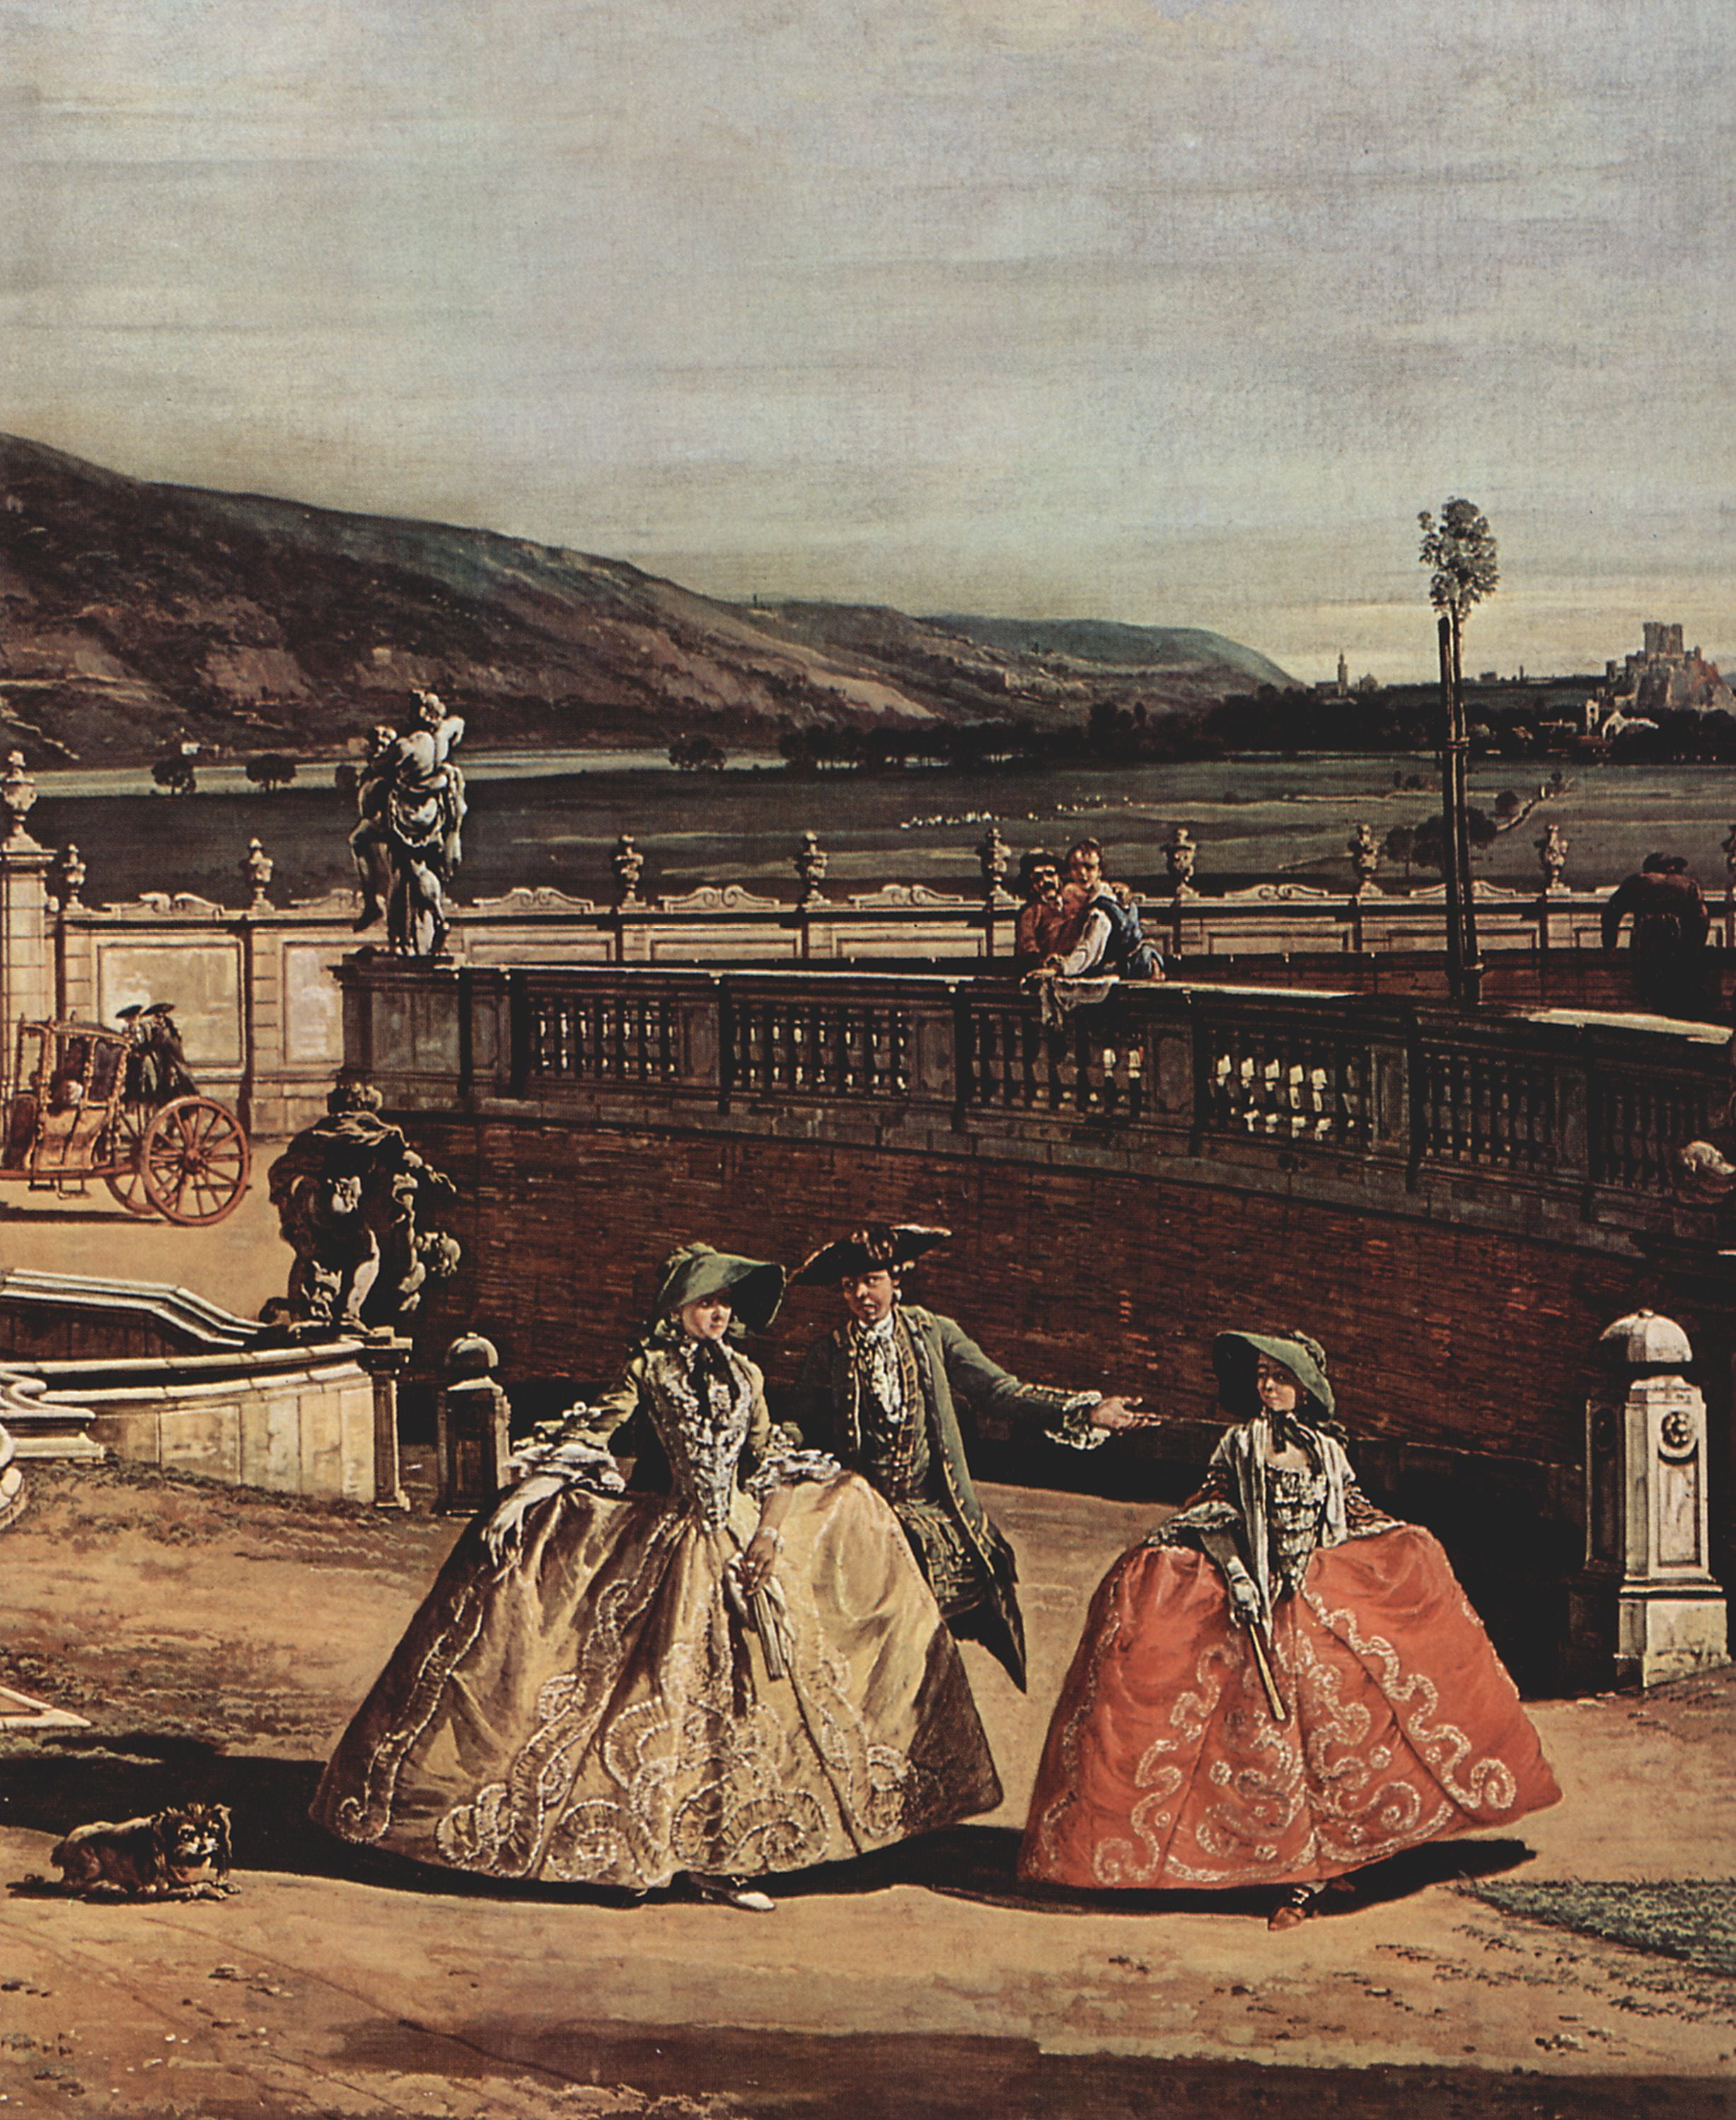 Картины конца 18 века